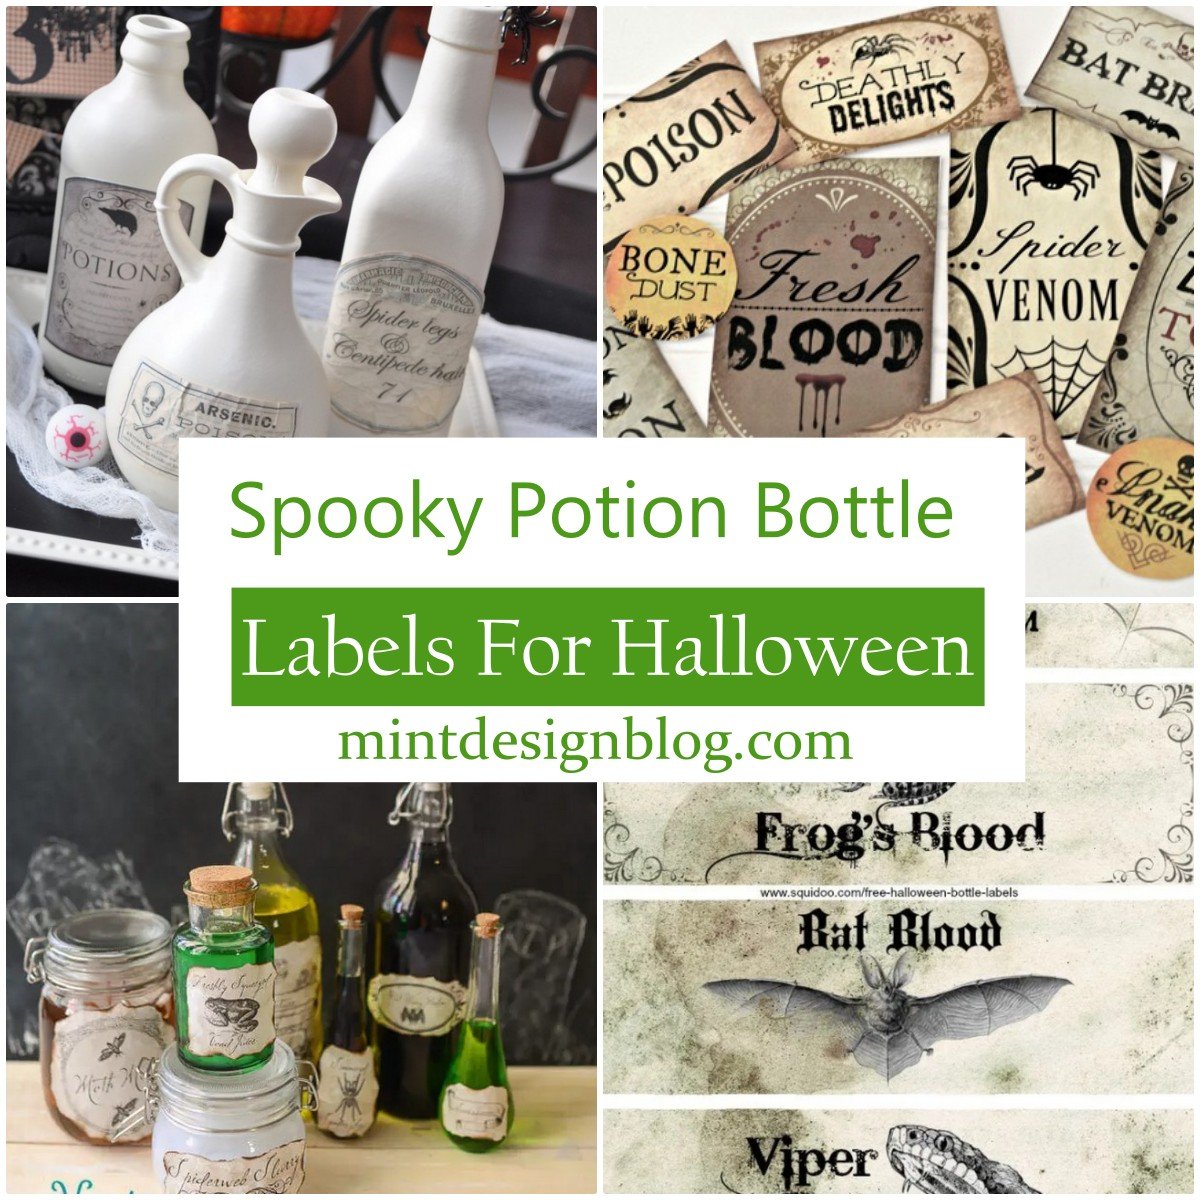 10 Spooky Potion Bottle Labels For Halloween - Mint Design Blog